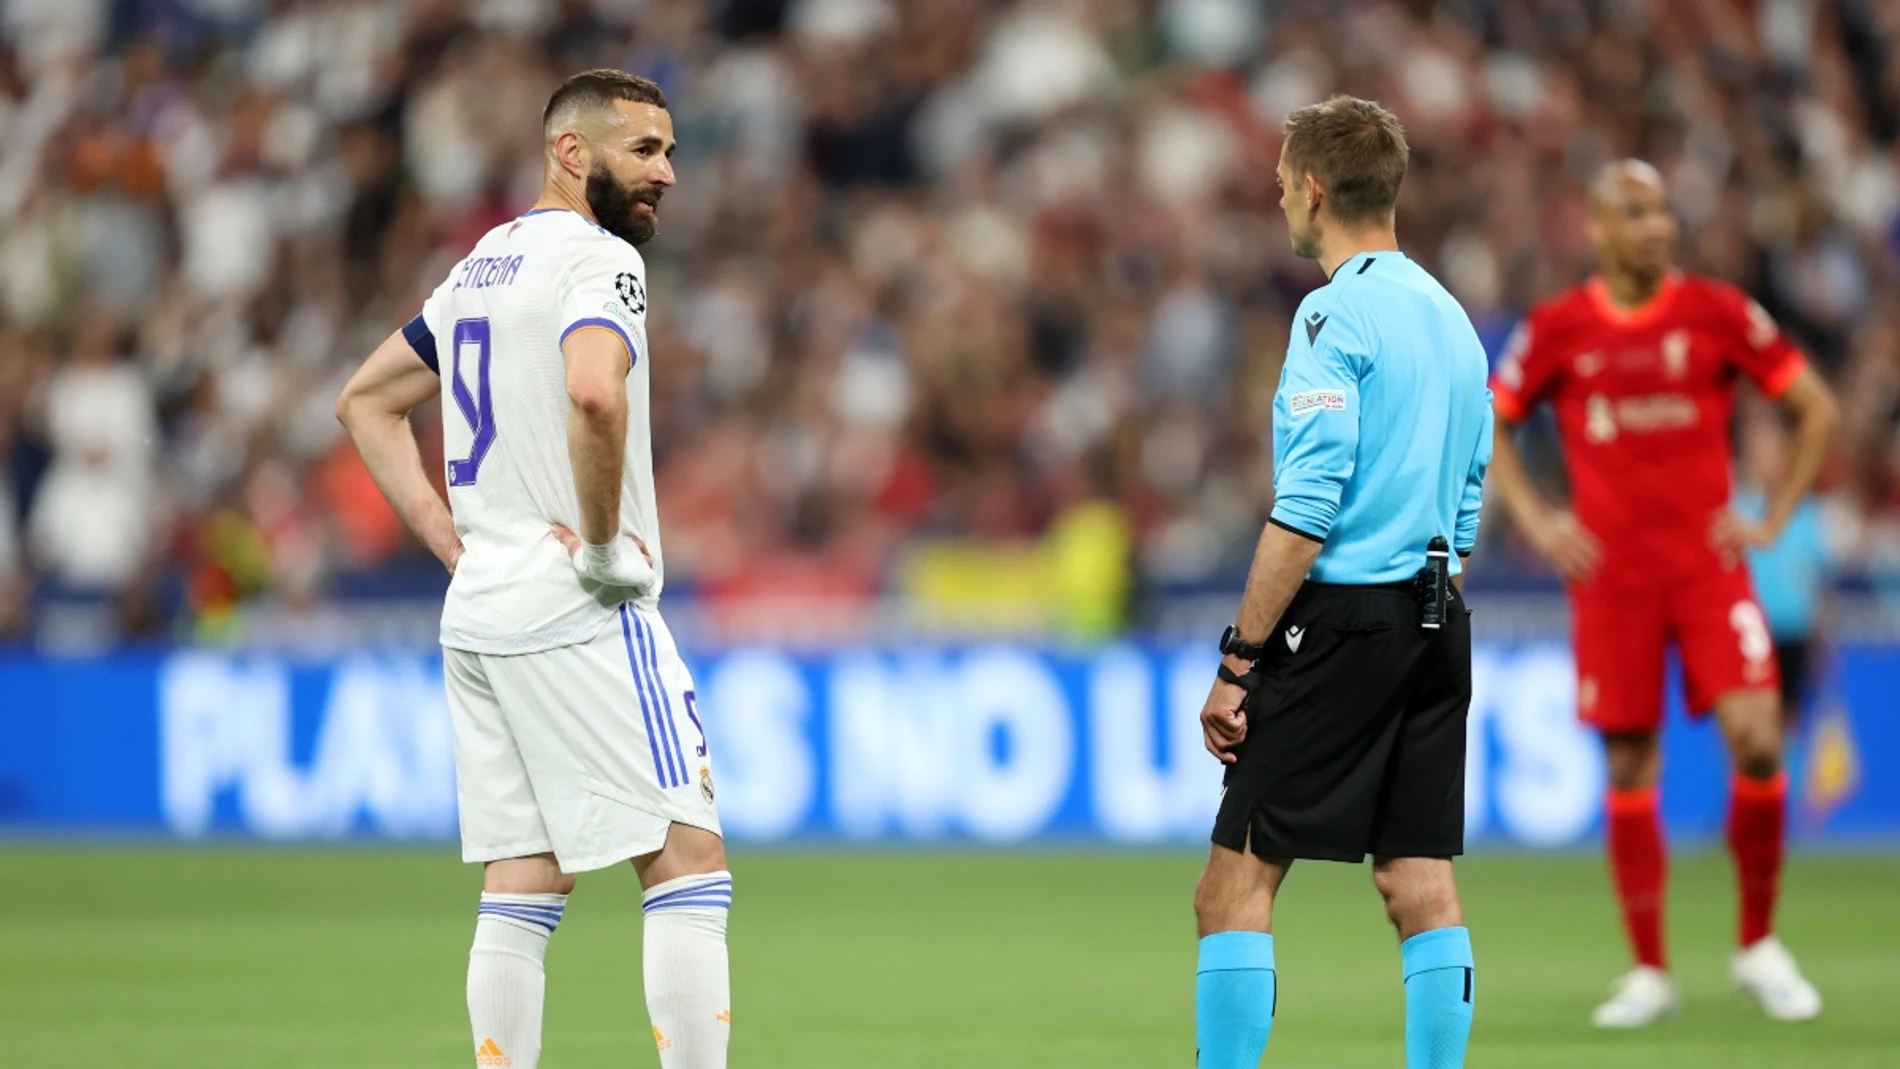 Hay fuera de juego en el gol anulado a Benzema? La polémica la final de Champions entre Liverpool Real Madrid